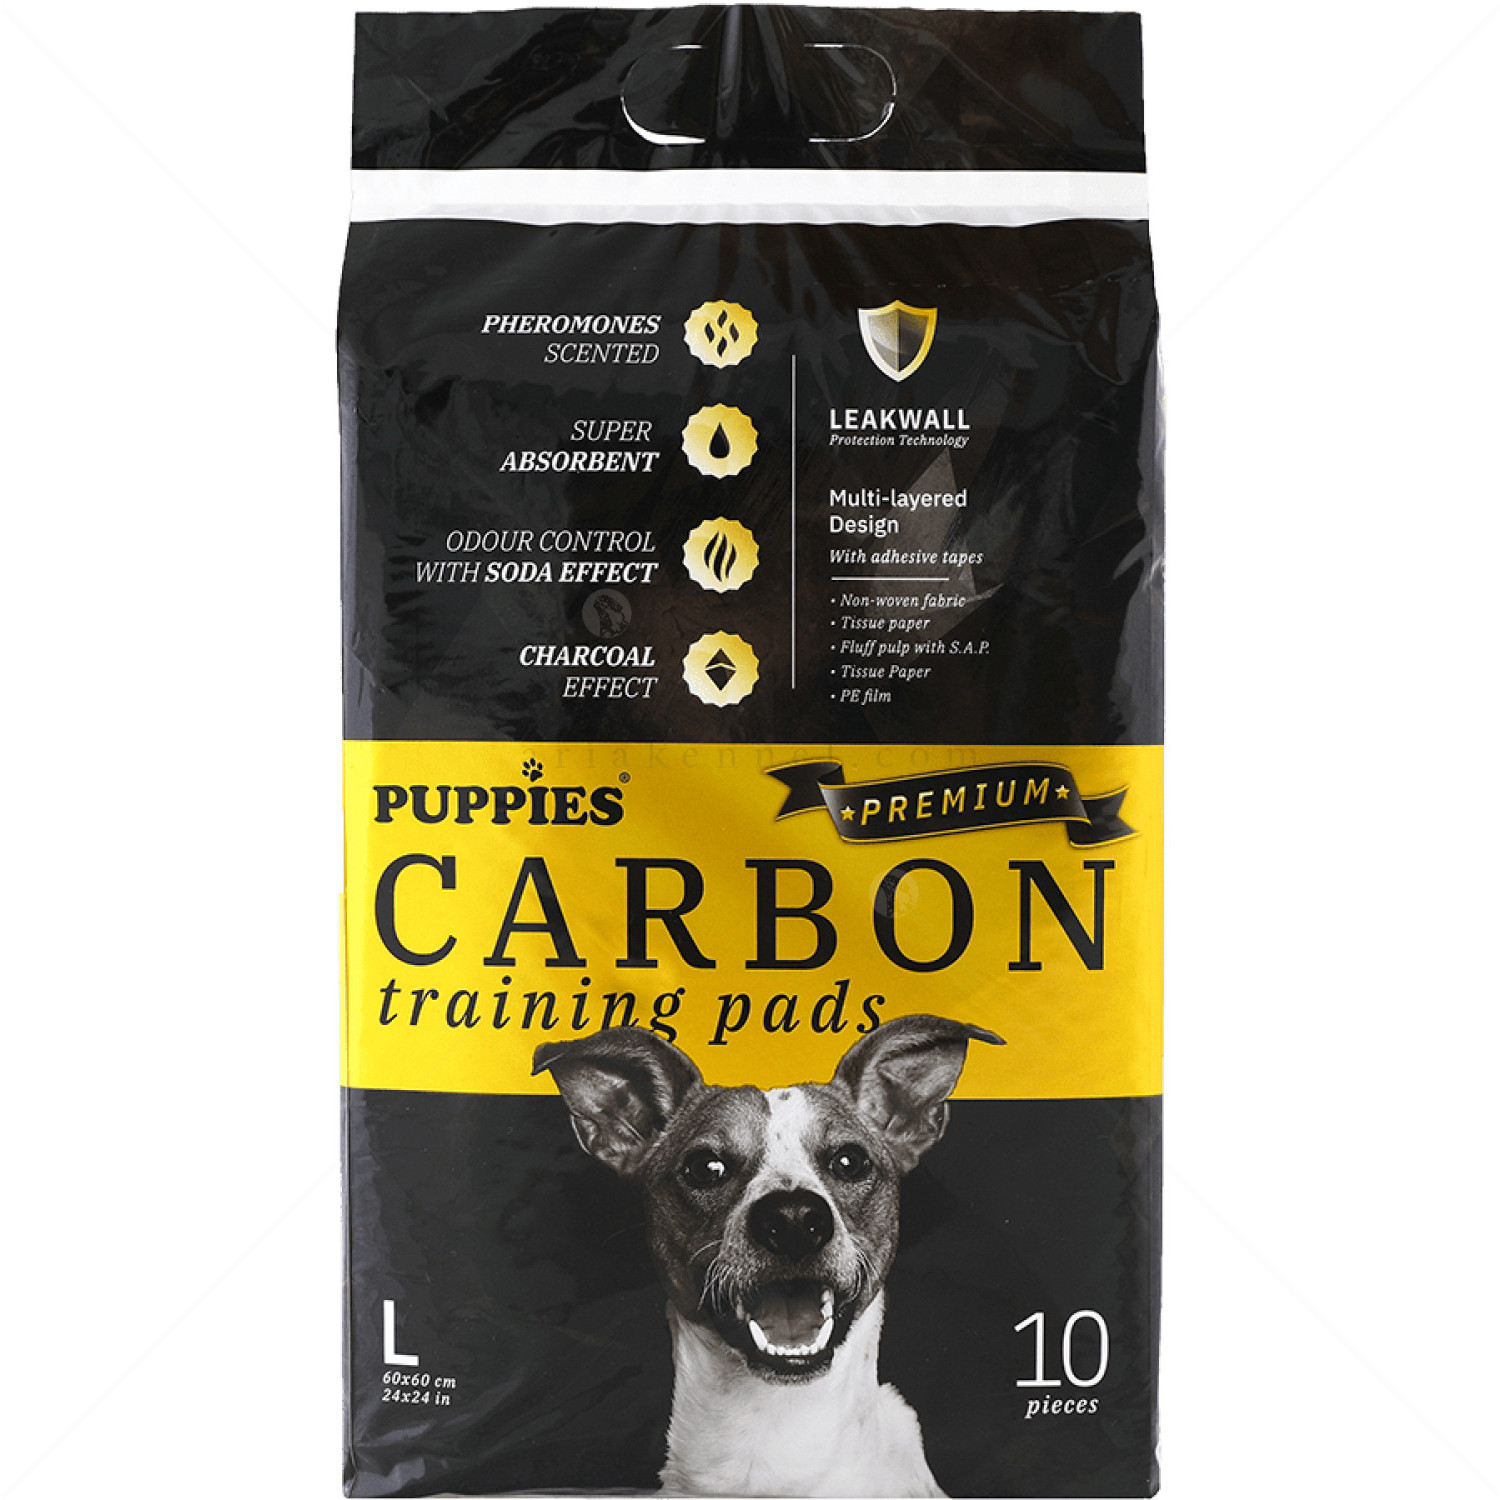 Хигиенни подложки/Пелени с активен въглен за кучета, L, PUPPIES Premium Carbon